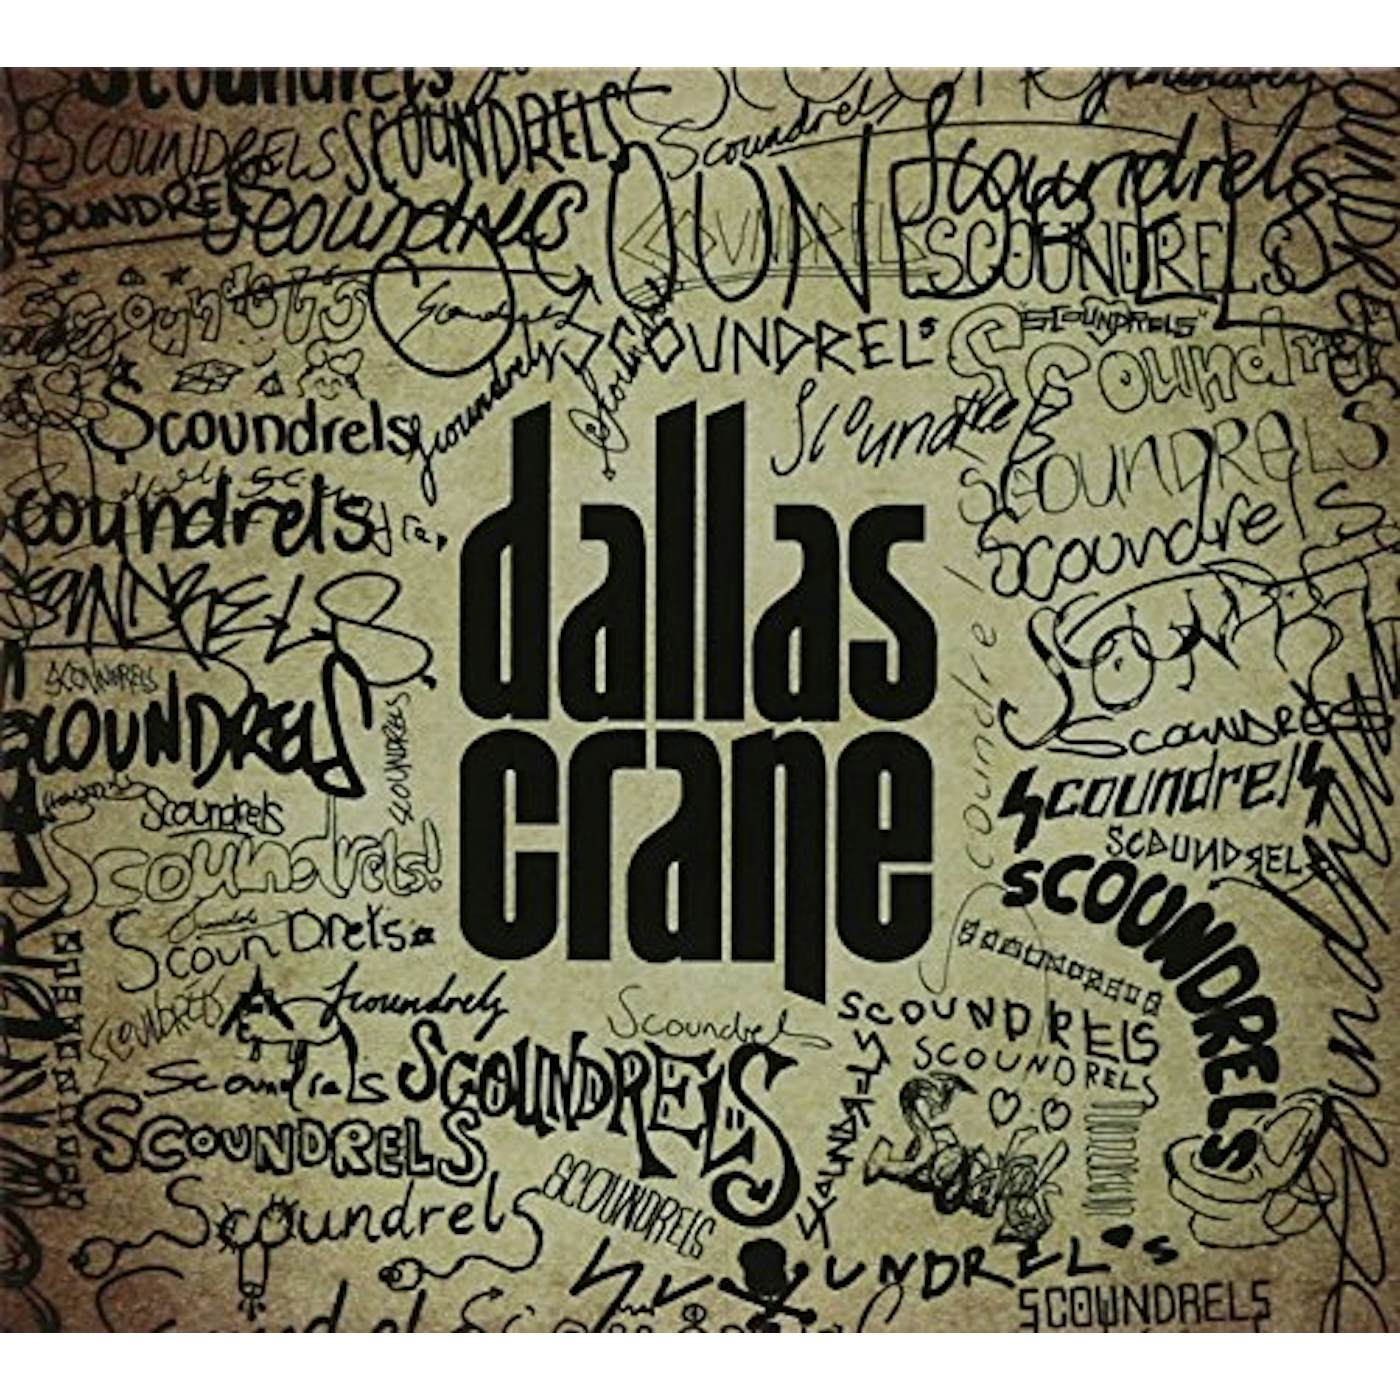 Dallas Crane SCOUNDRELS CD